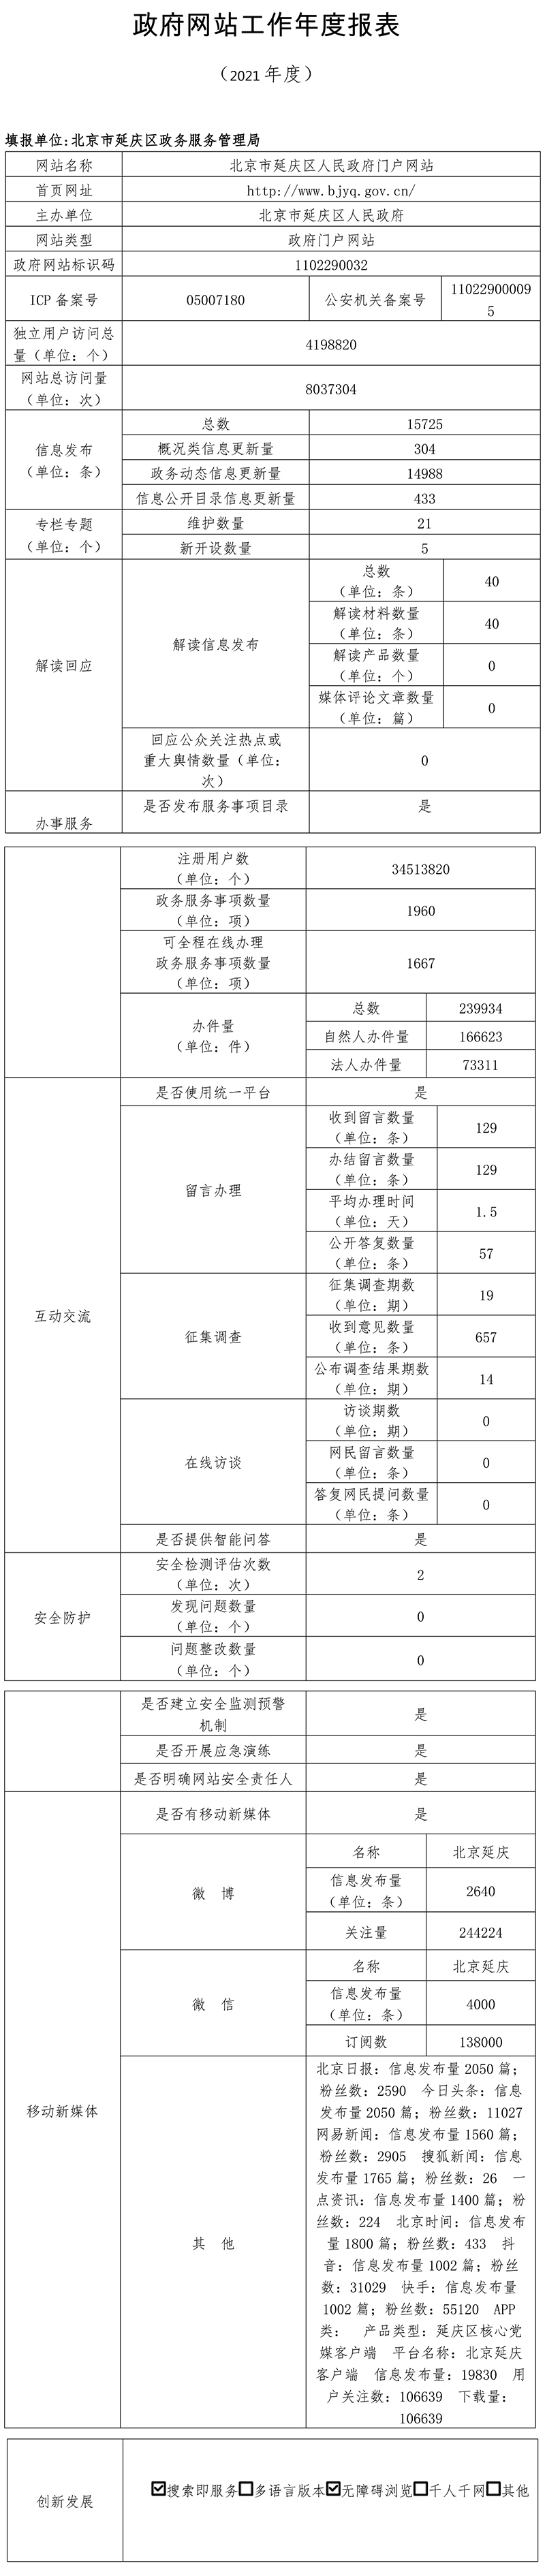 北京市延慶區人民政府2021年政府網站年度工作報表